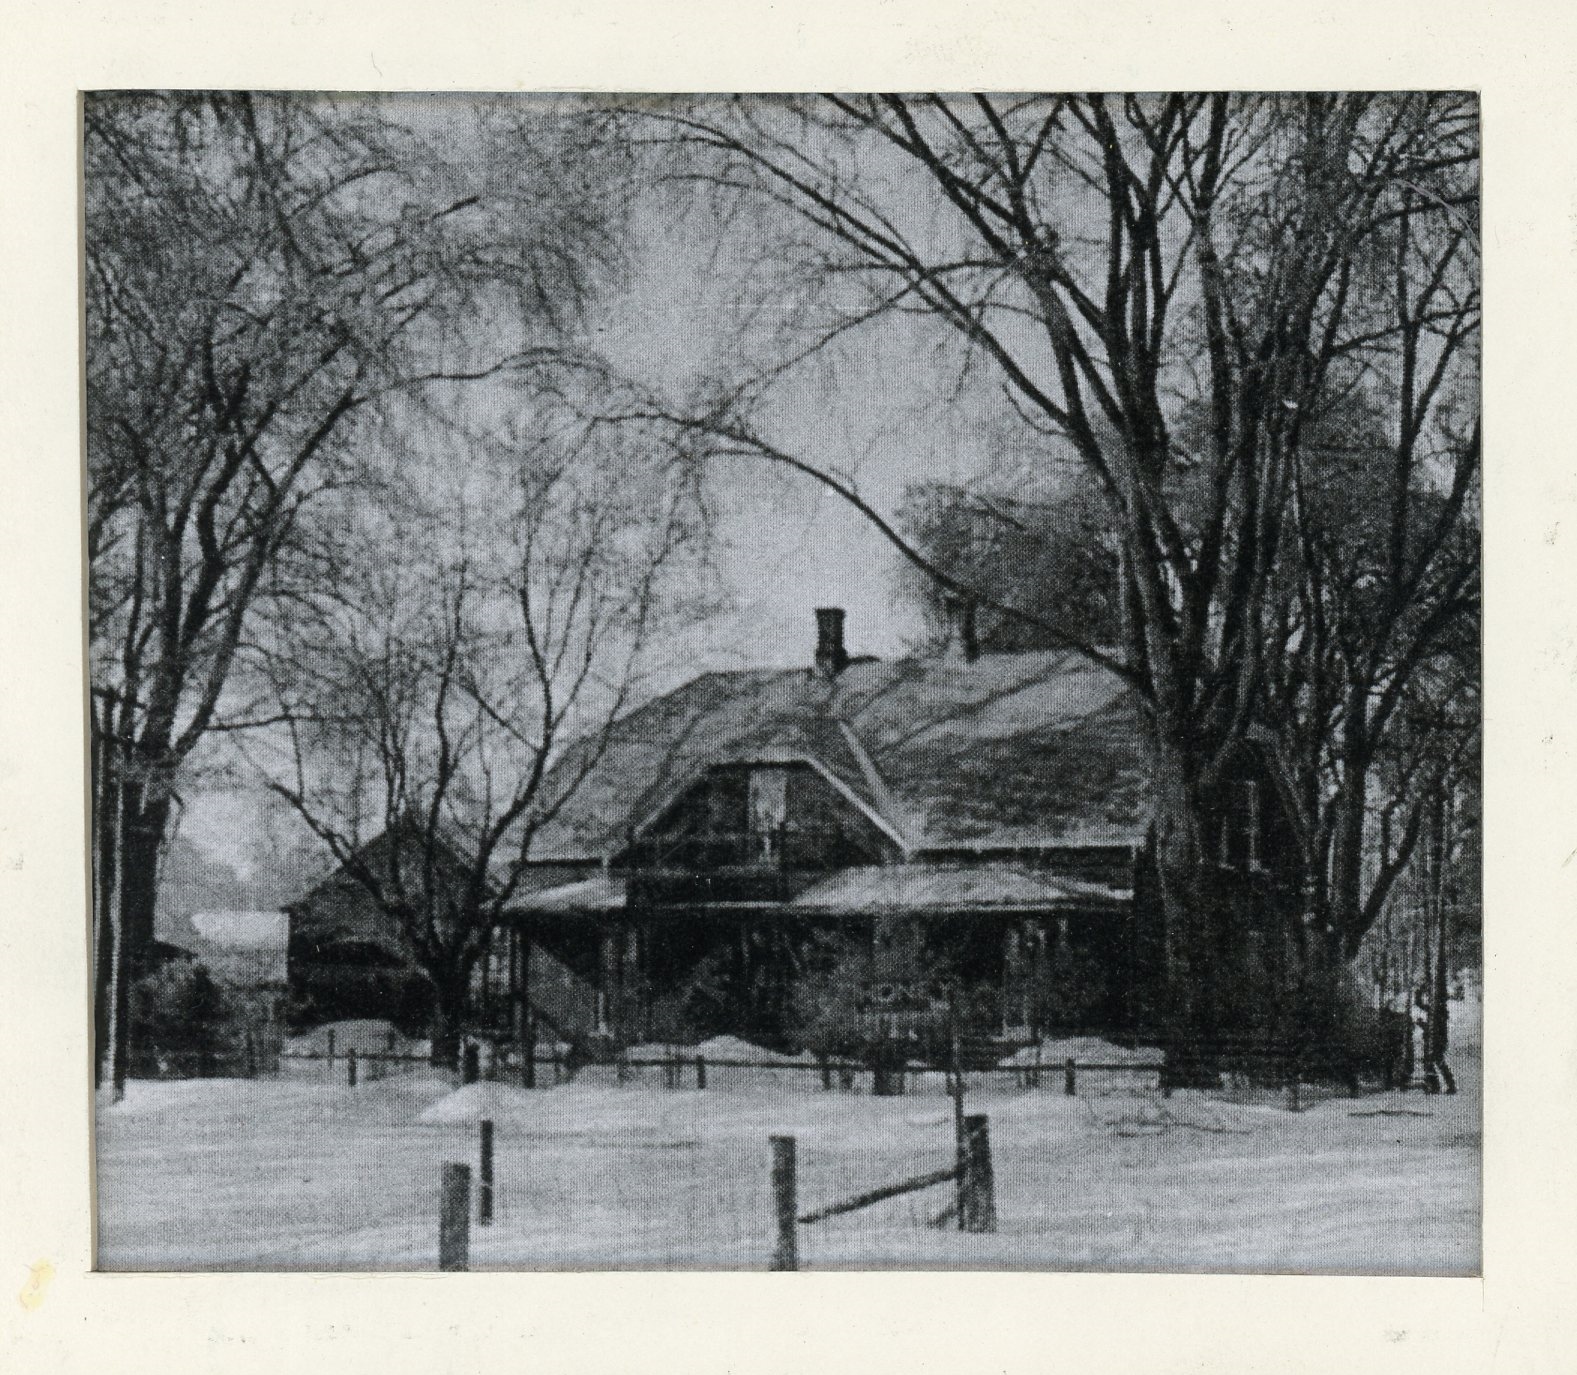 Photographie d’Elmbank, la résidence de Maude Abbott, en hiver, noir et blanc. Il s’agit d’une maison en briques de deux étages avec un toit à deux versants, deux cheminées et une galerie aux deux étages. On aperçoit une clôture en bois à l’avant de la maison, une affiche avec l’inscription « HONEY » devant celle-ci et beaucoup d’arbres sur le terrain. 